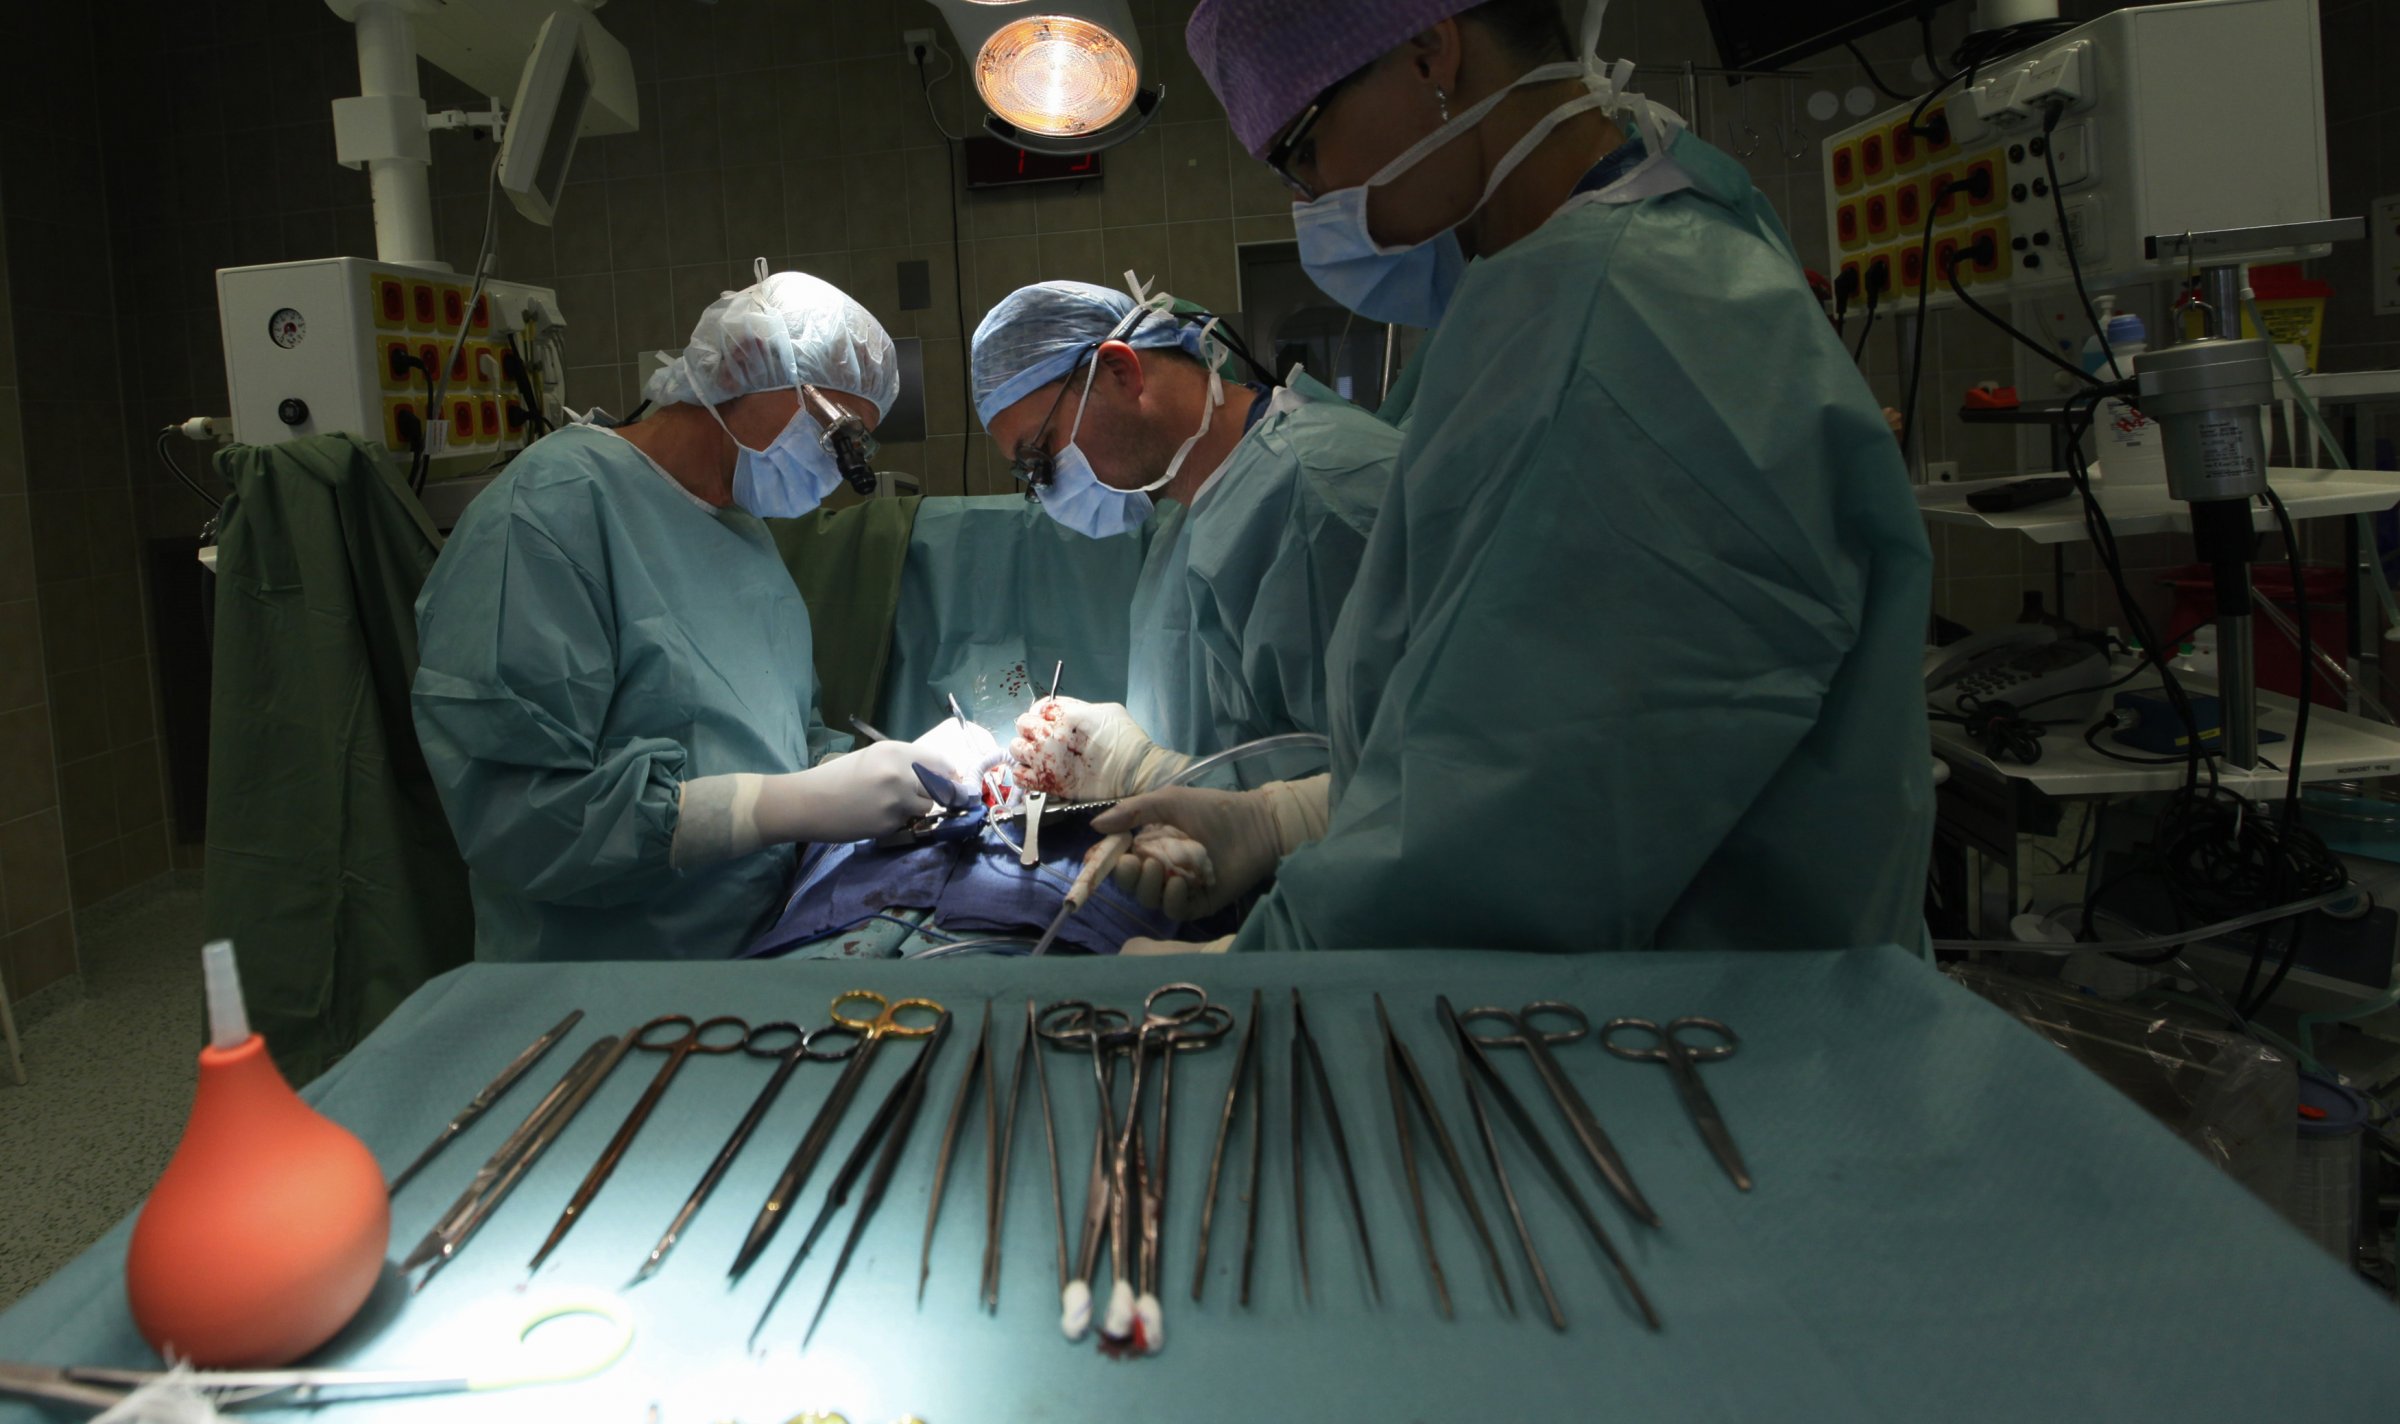 आयुर्वेद चिकित्सकों को ऑपरेशन करने की अनुमति देने के सरकार के क़दम पर आईएमए ने की आलोचना